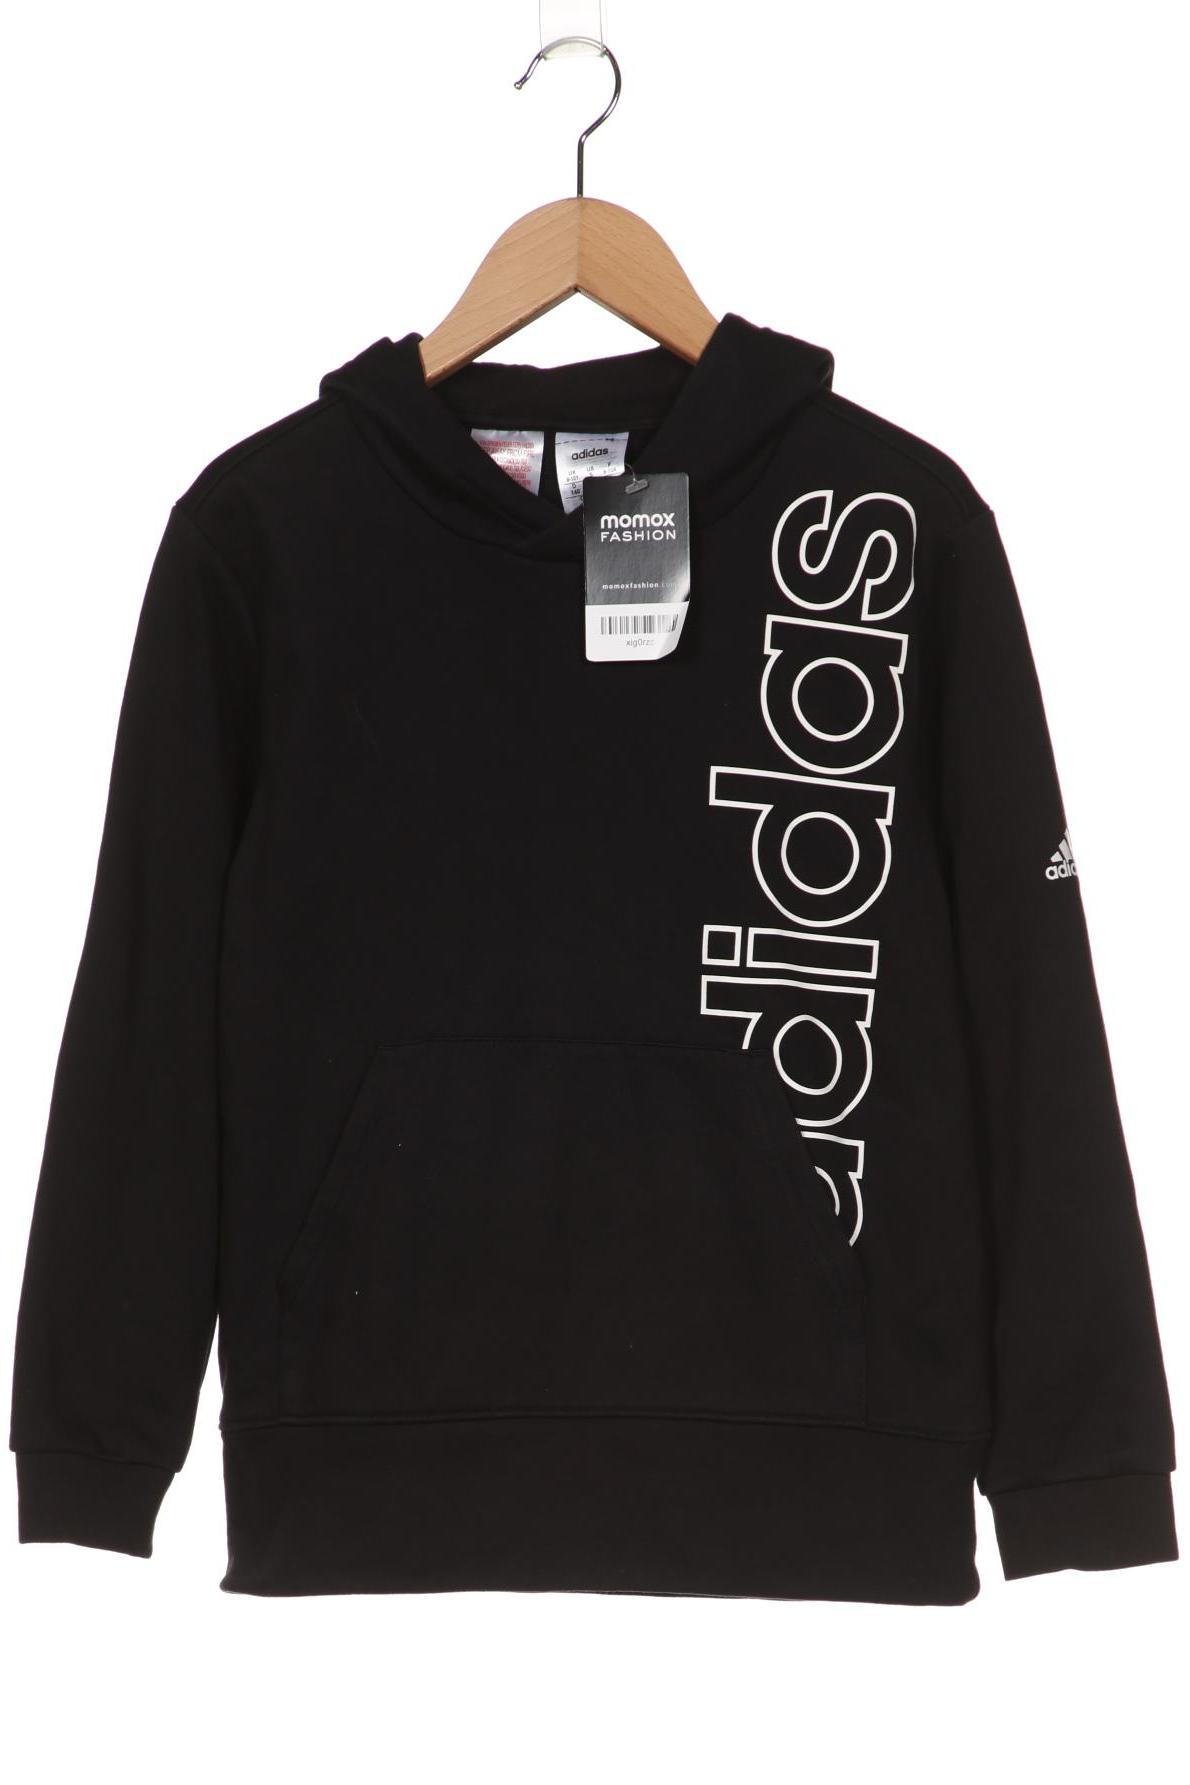 adidas Mädchen Hoodies & Sweater, schwarz von Adidas